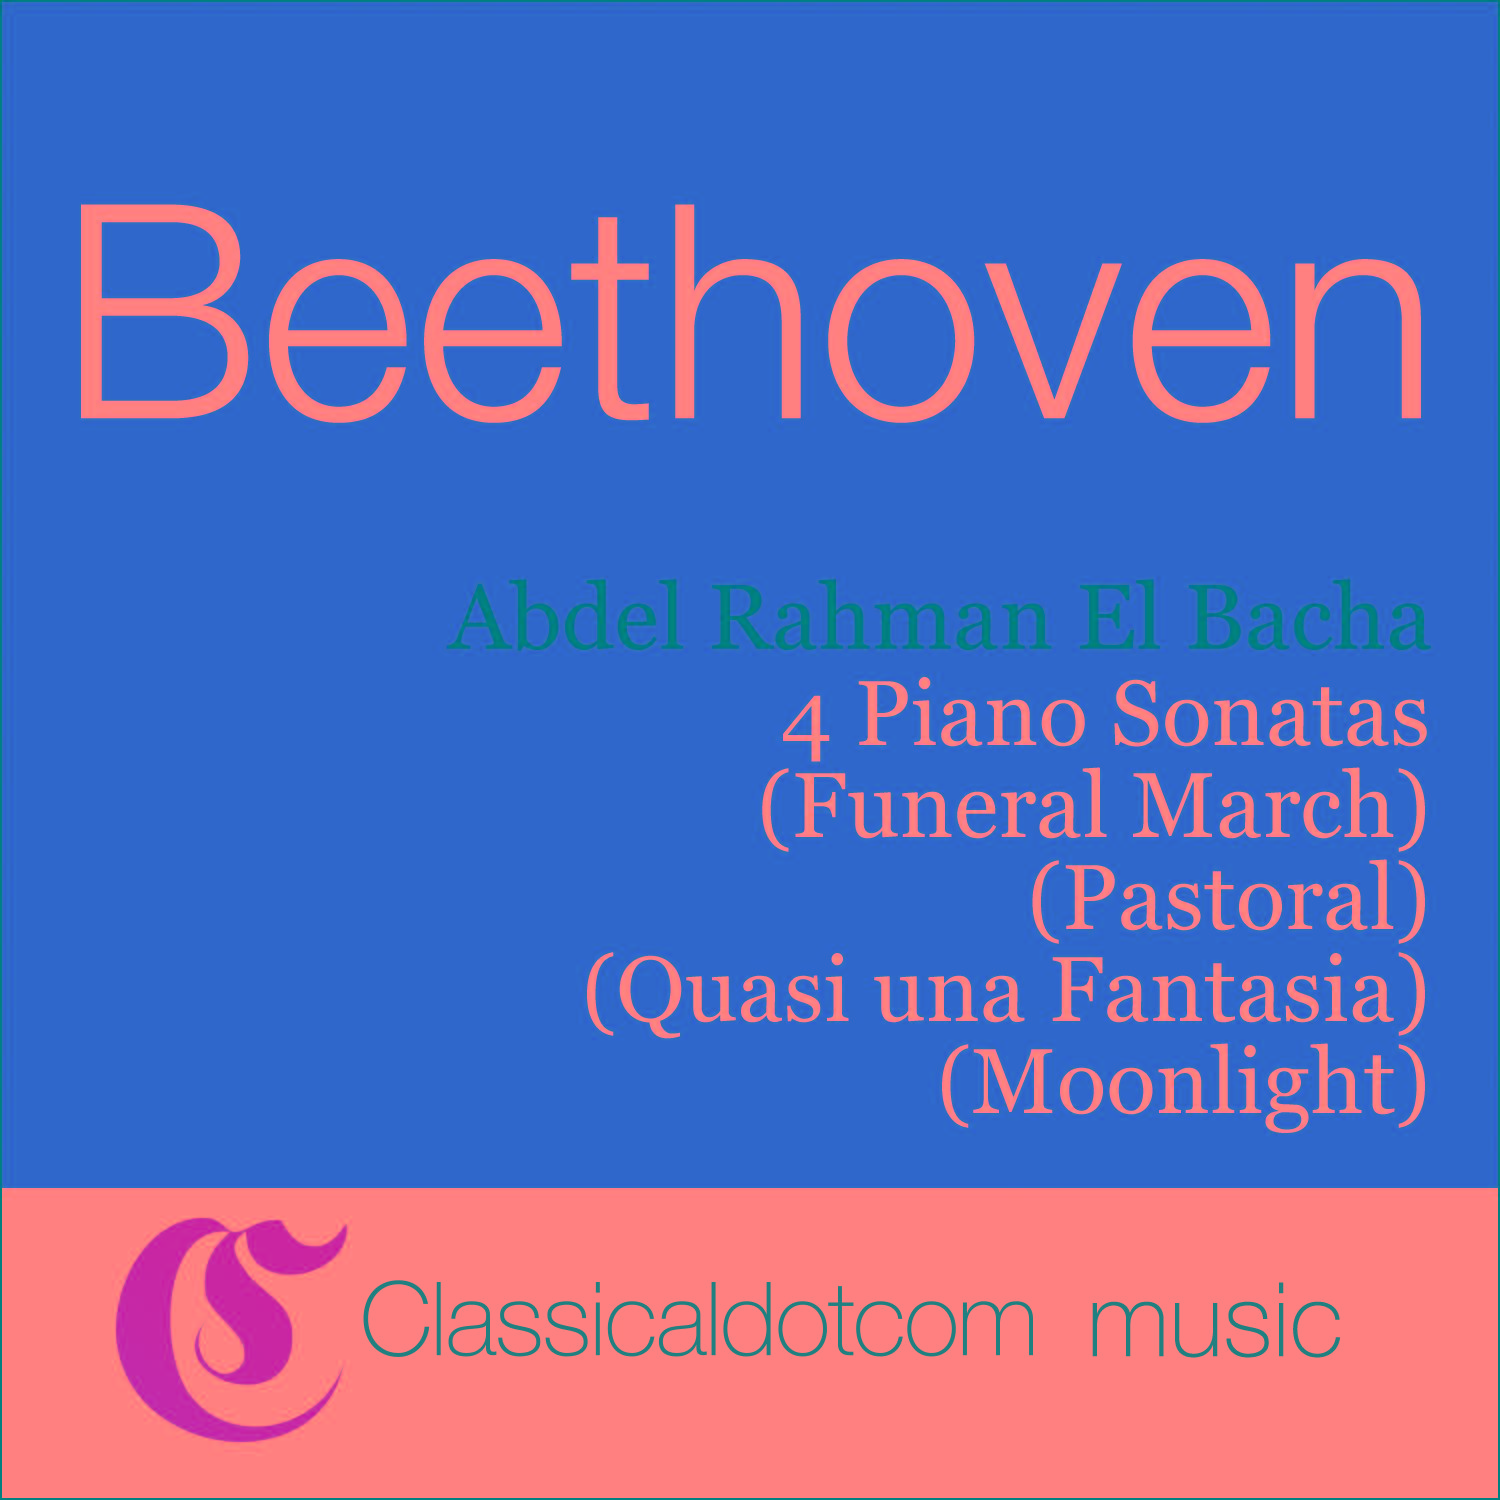 Piano Sonata No. 13 in E flat, Op. 27 No. 1 (Quasi una Fantasia) - Allegro molto e vivace